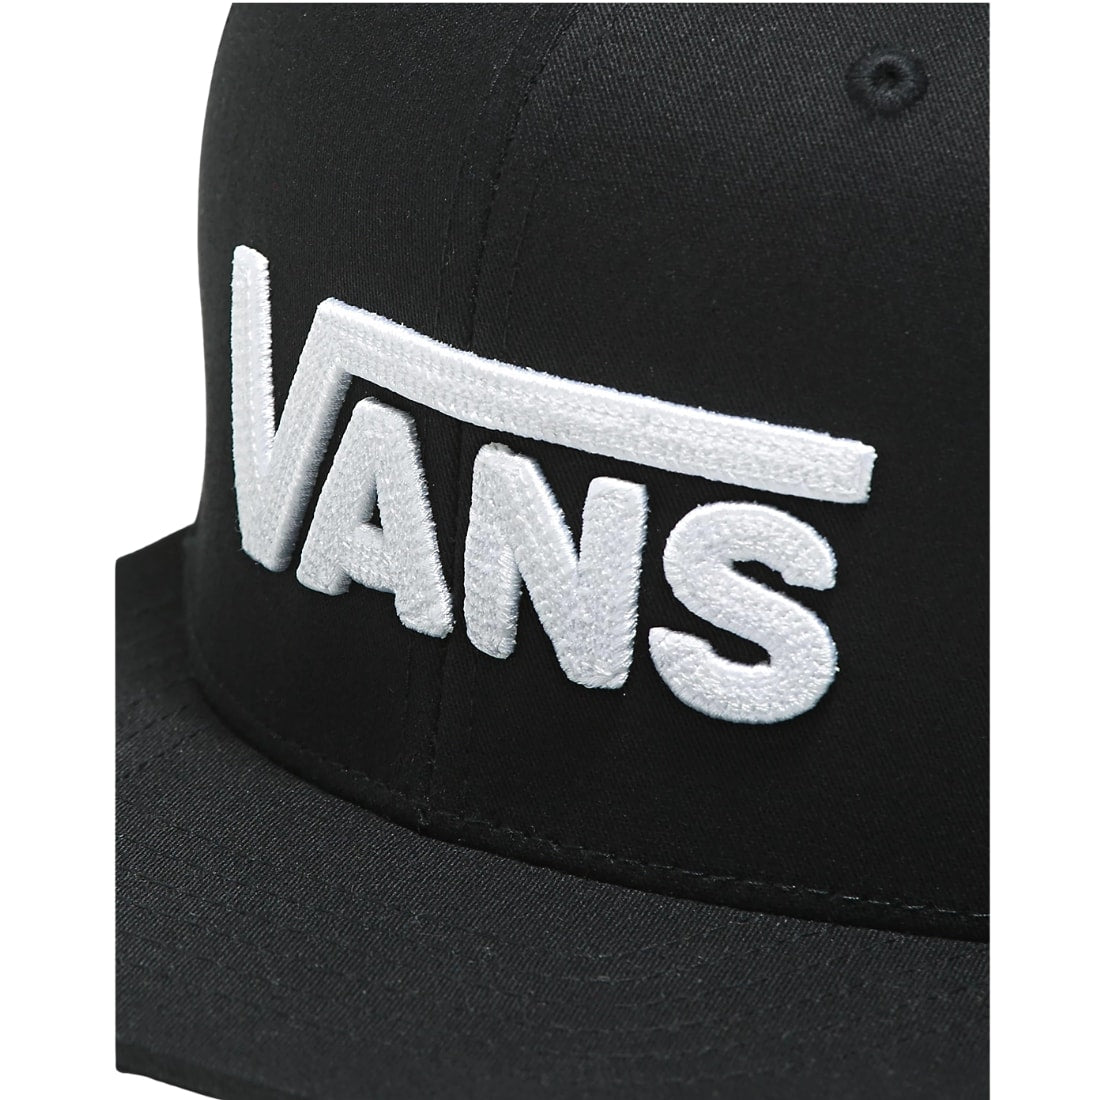 Vans Kids Drop V II Snapback Cap - Black/White - Boys Snapback Cap by Vans One Size